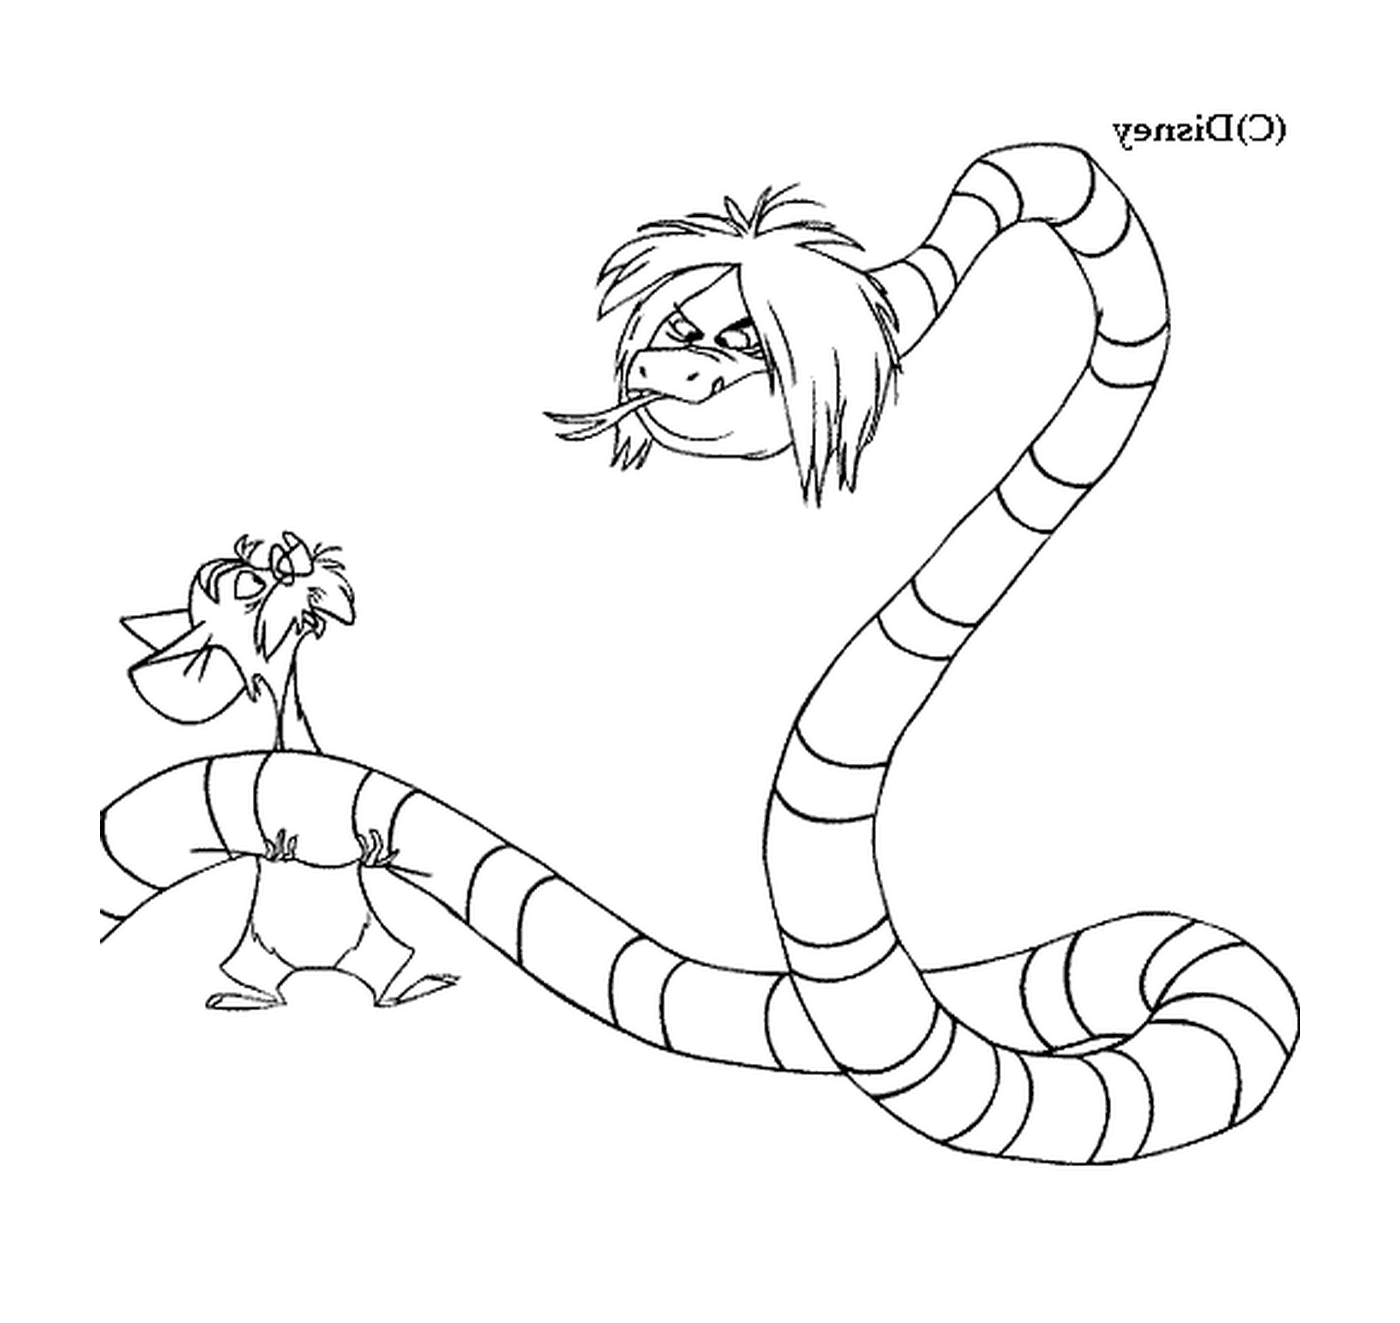  Merlín y Mim se transformaron en una serpiente y un ratón 